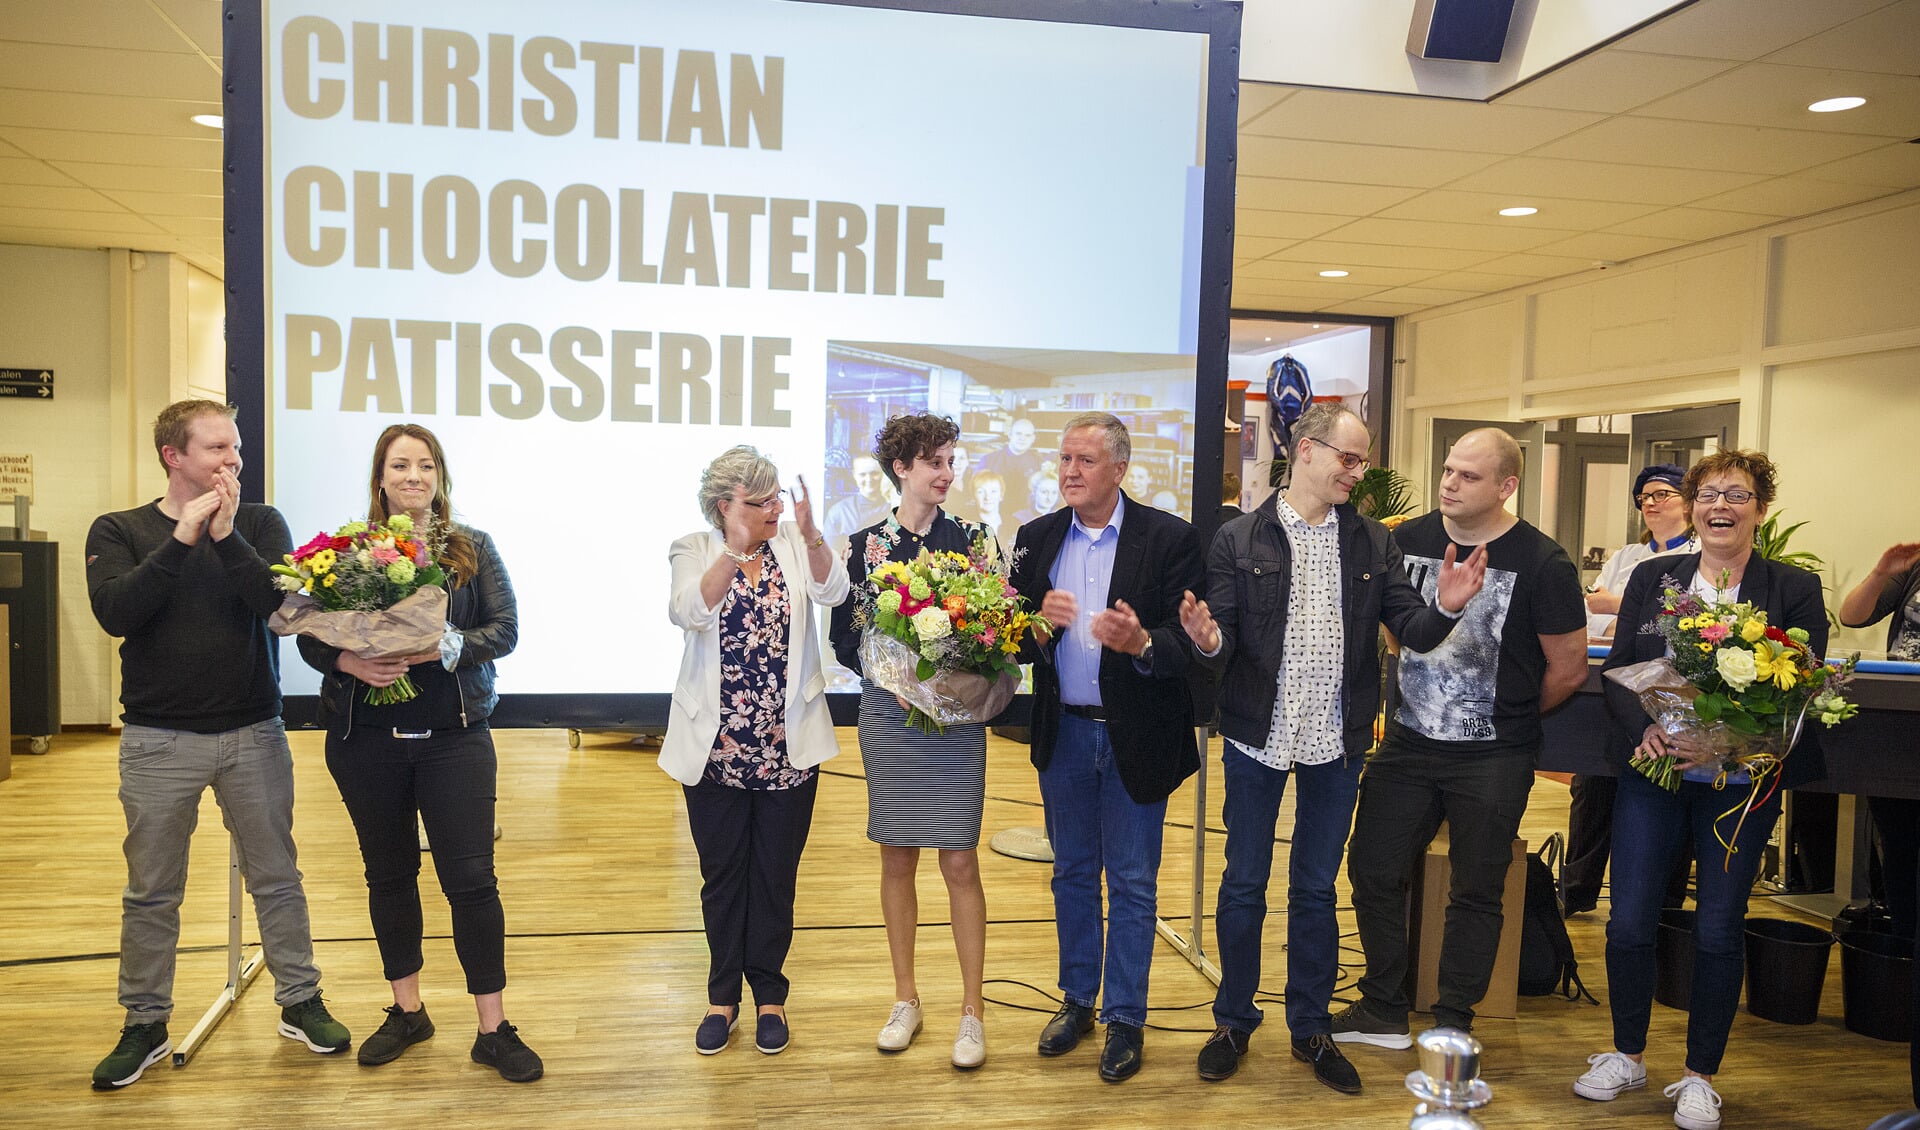 Christian Chocolaterie en Patisserie Leerbedrijf van het Jaar 2017 (met filmpje)